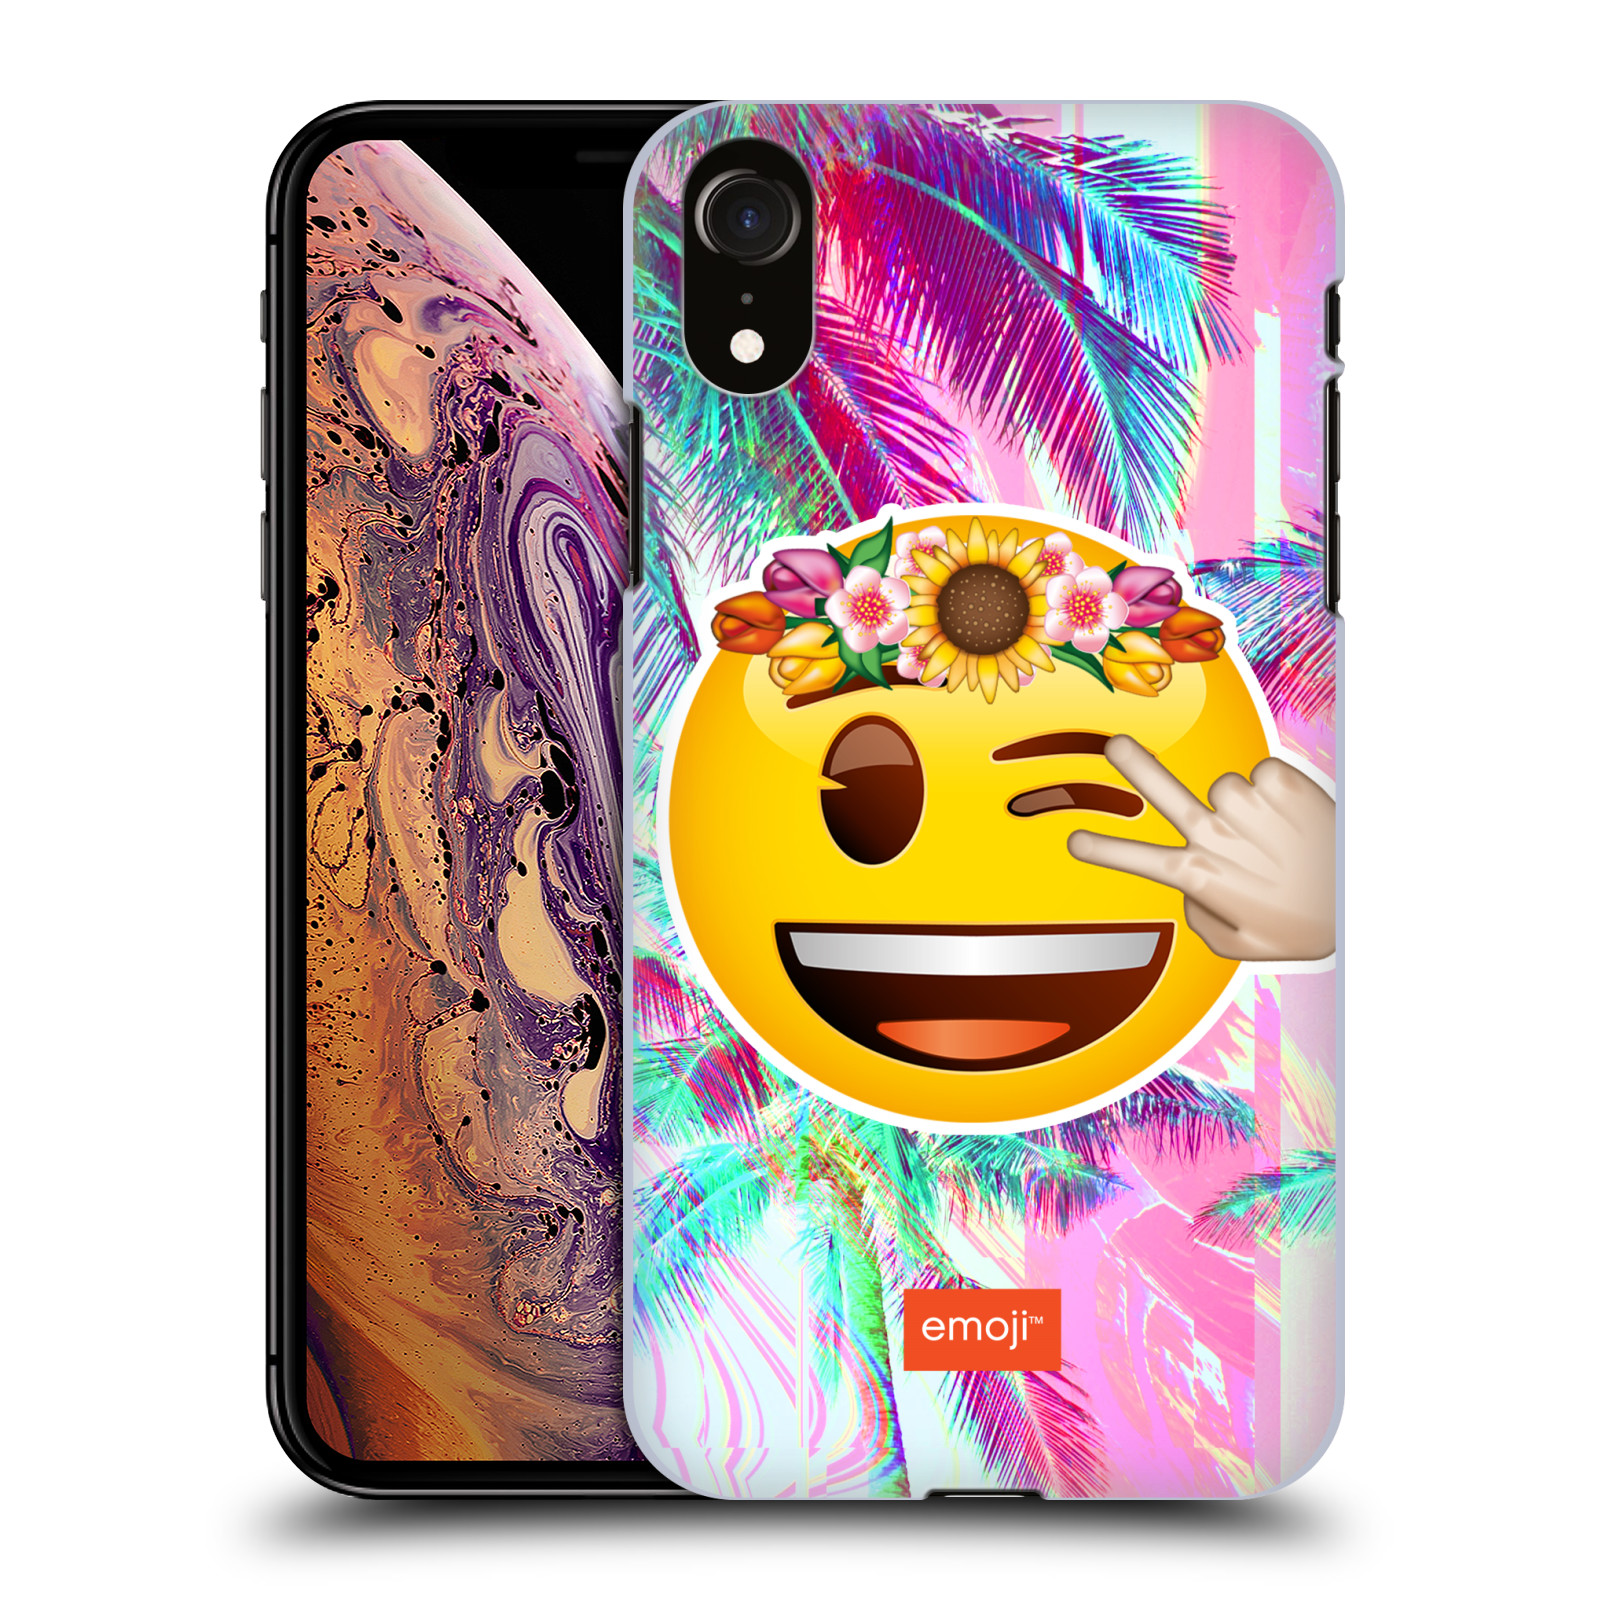 Pouzdro na mobil Apple Iphone XR - HEAD CASE - Emoji smajlík palmy a květiny